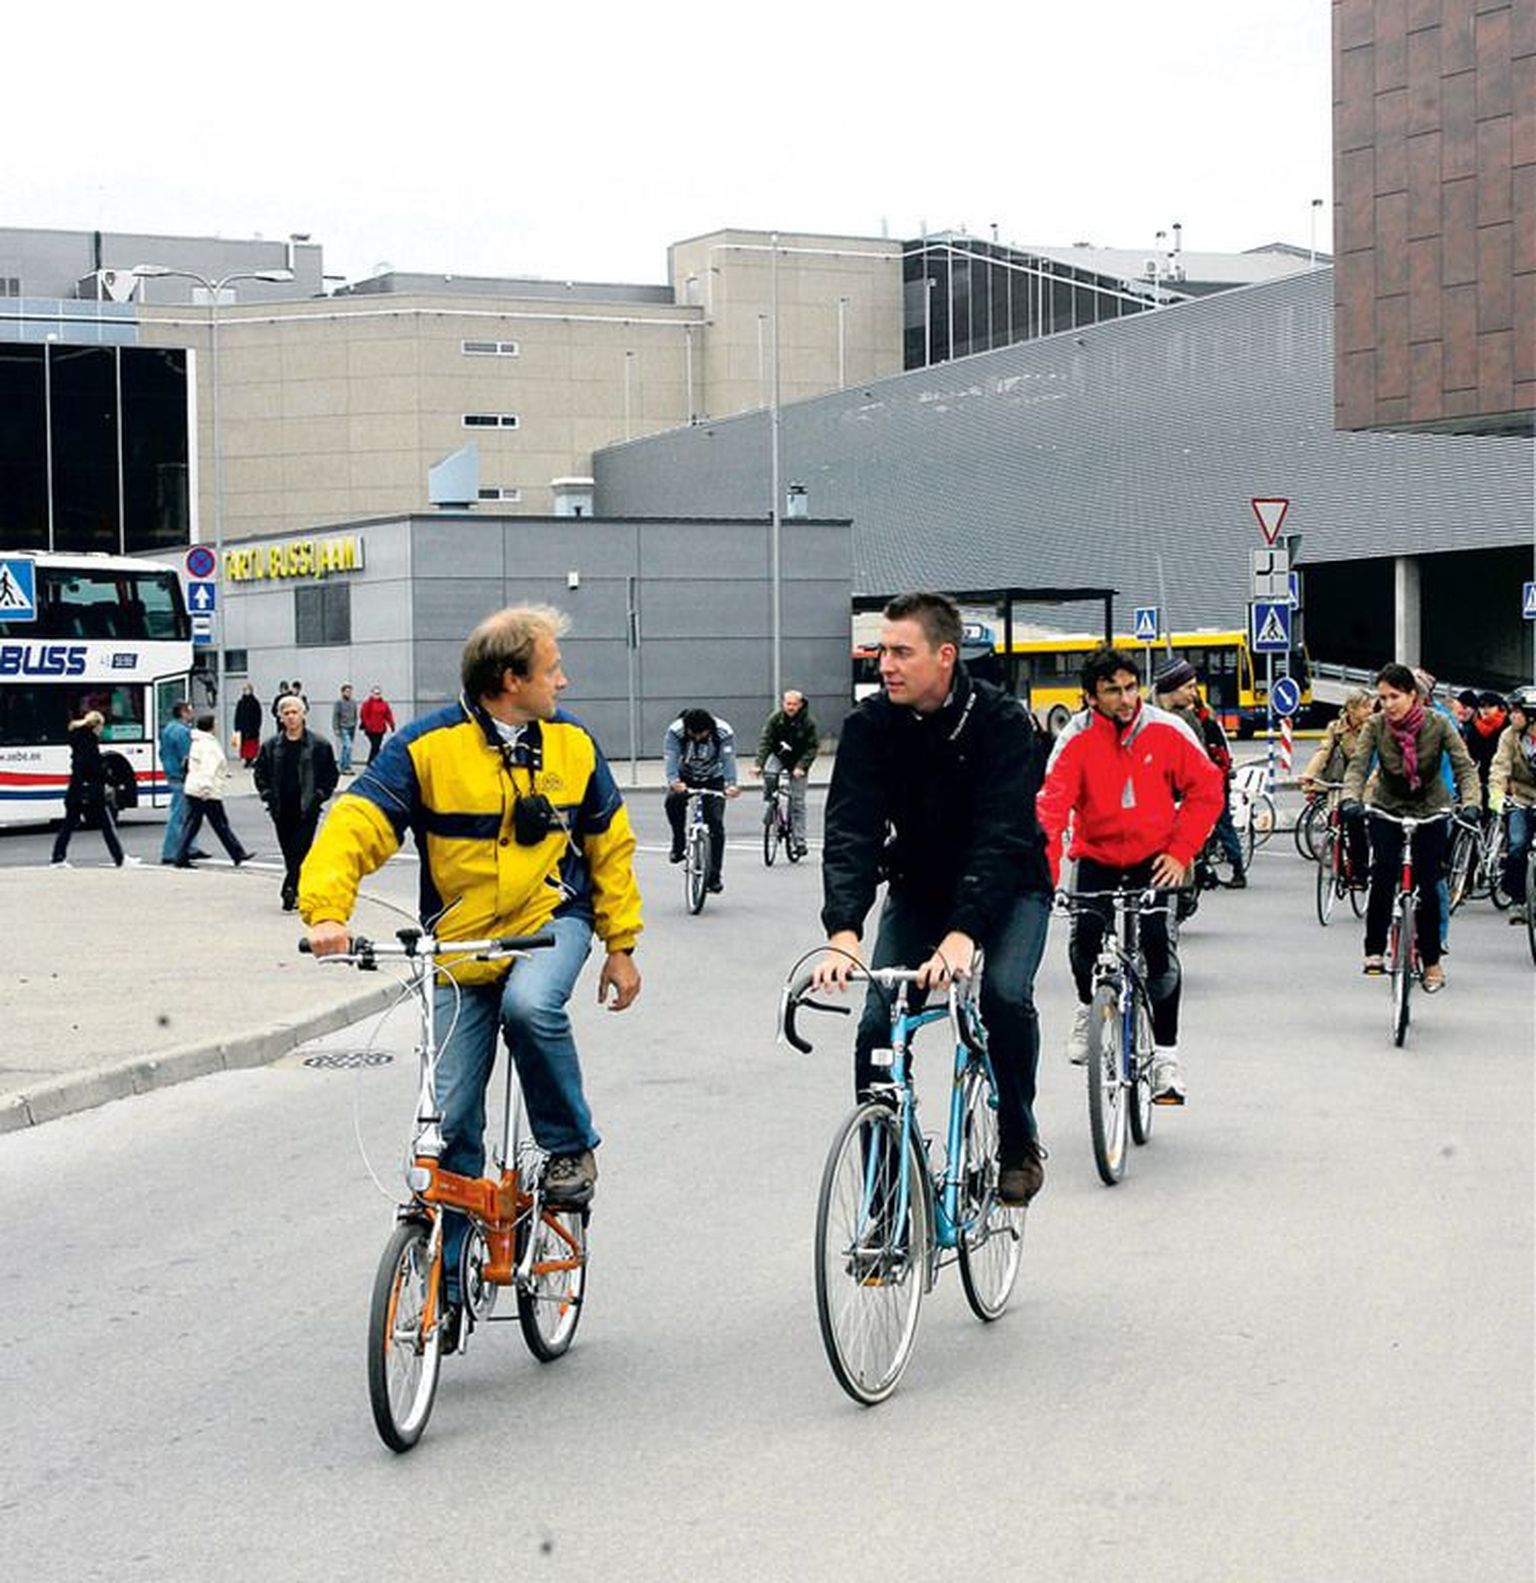 Jalgrattaklubi Vänta Aga president Rein Lepik (vasakul) ja belglane Tim Asperges startisid koos pea neljakümne ratturiga kahekümnest riigist läinud neljapäeval Dorpati hotelli juurest rattaretkele, et näha, millised on rattasõiduvõimalused Tartus. 
.